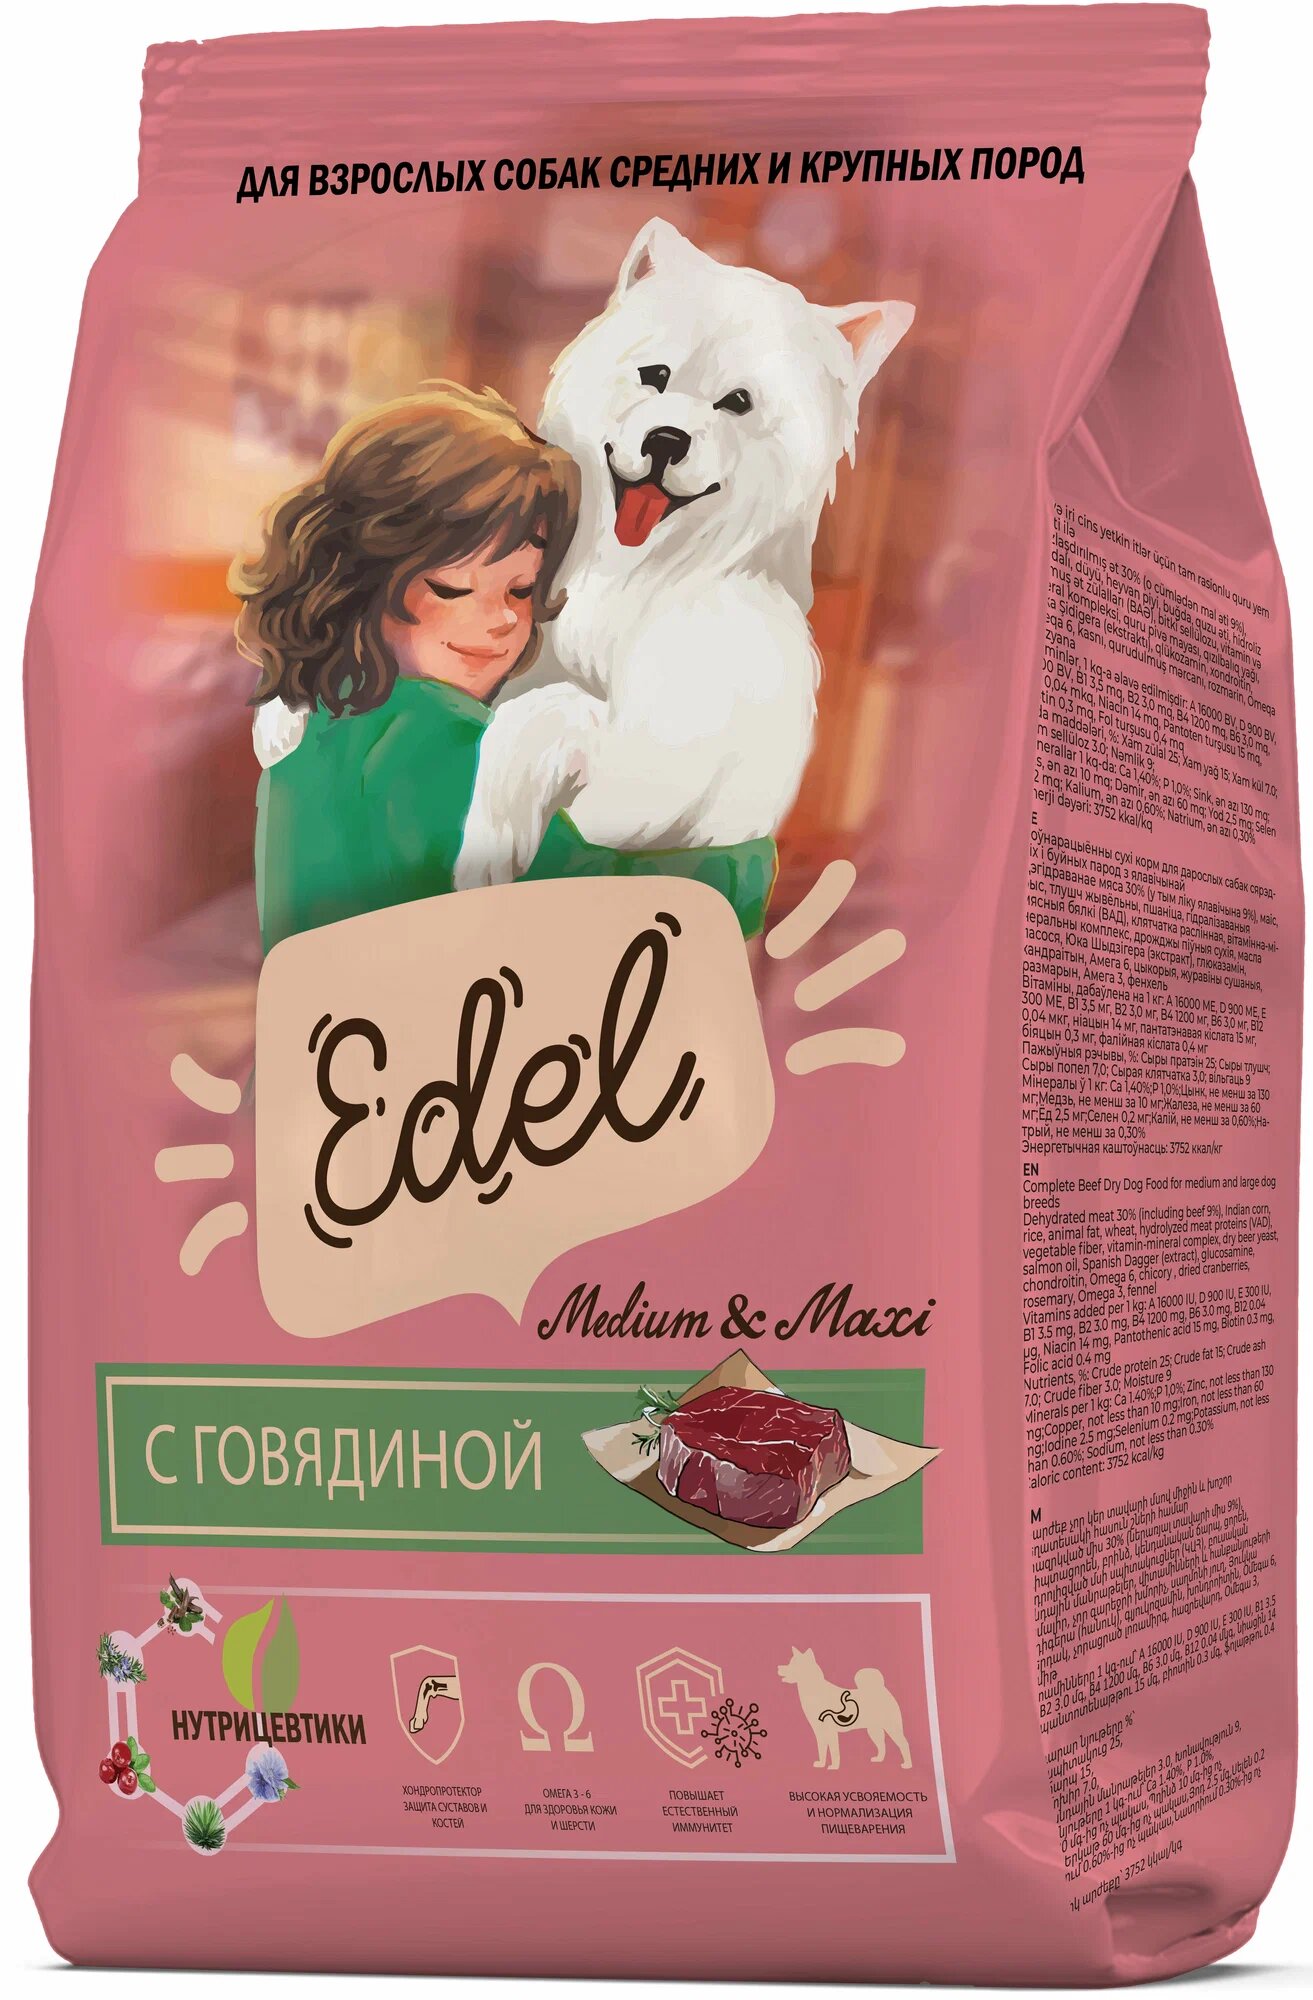 Сухой корм EDEL для взрослых собак средних и крупных пород, с говядиной Adult Medium & Maxi Beef 2 кг